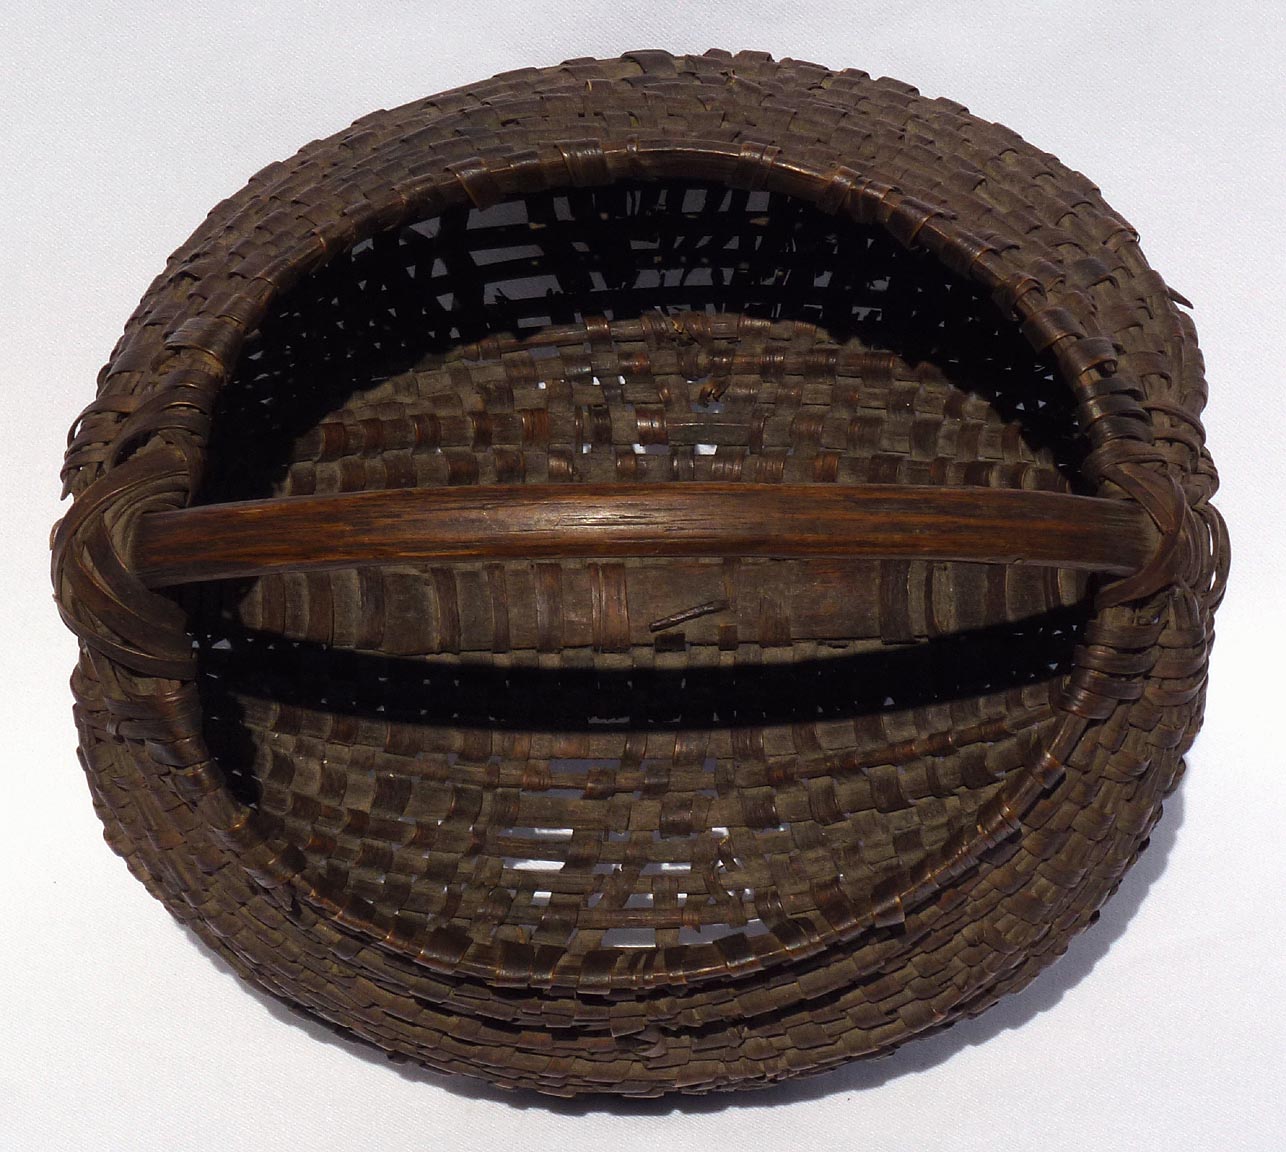 Wood splint basket